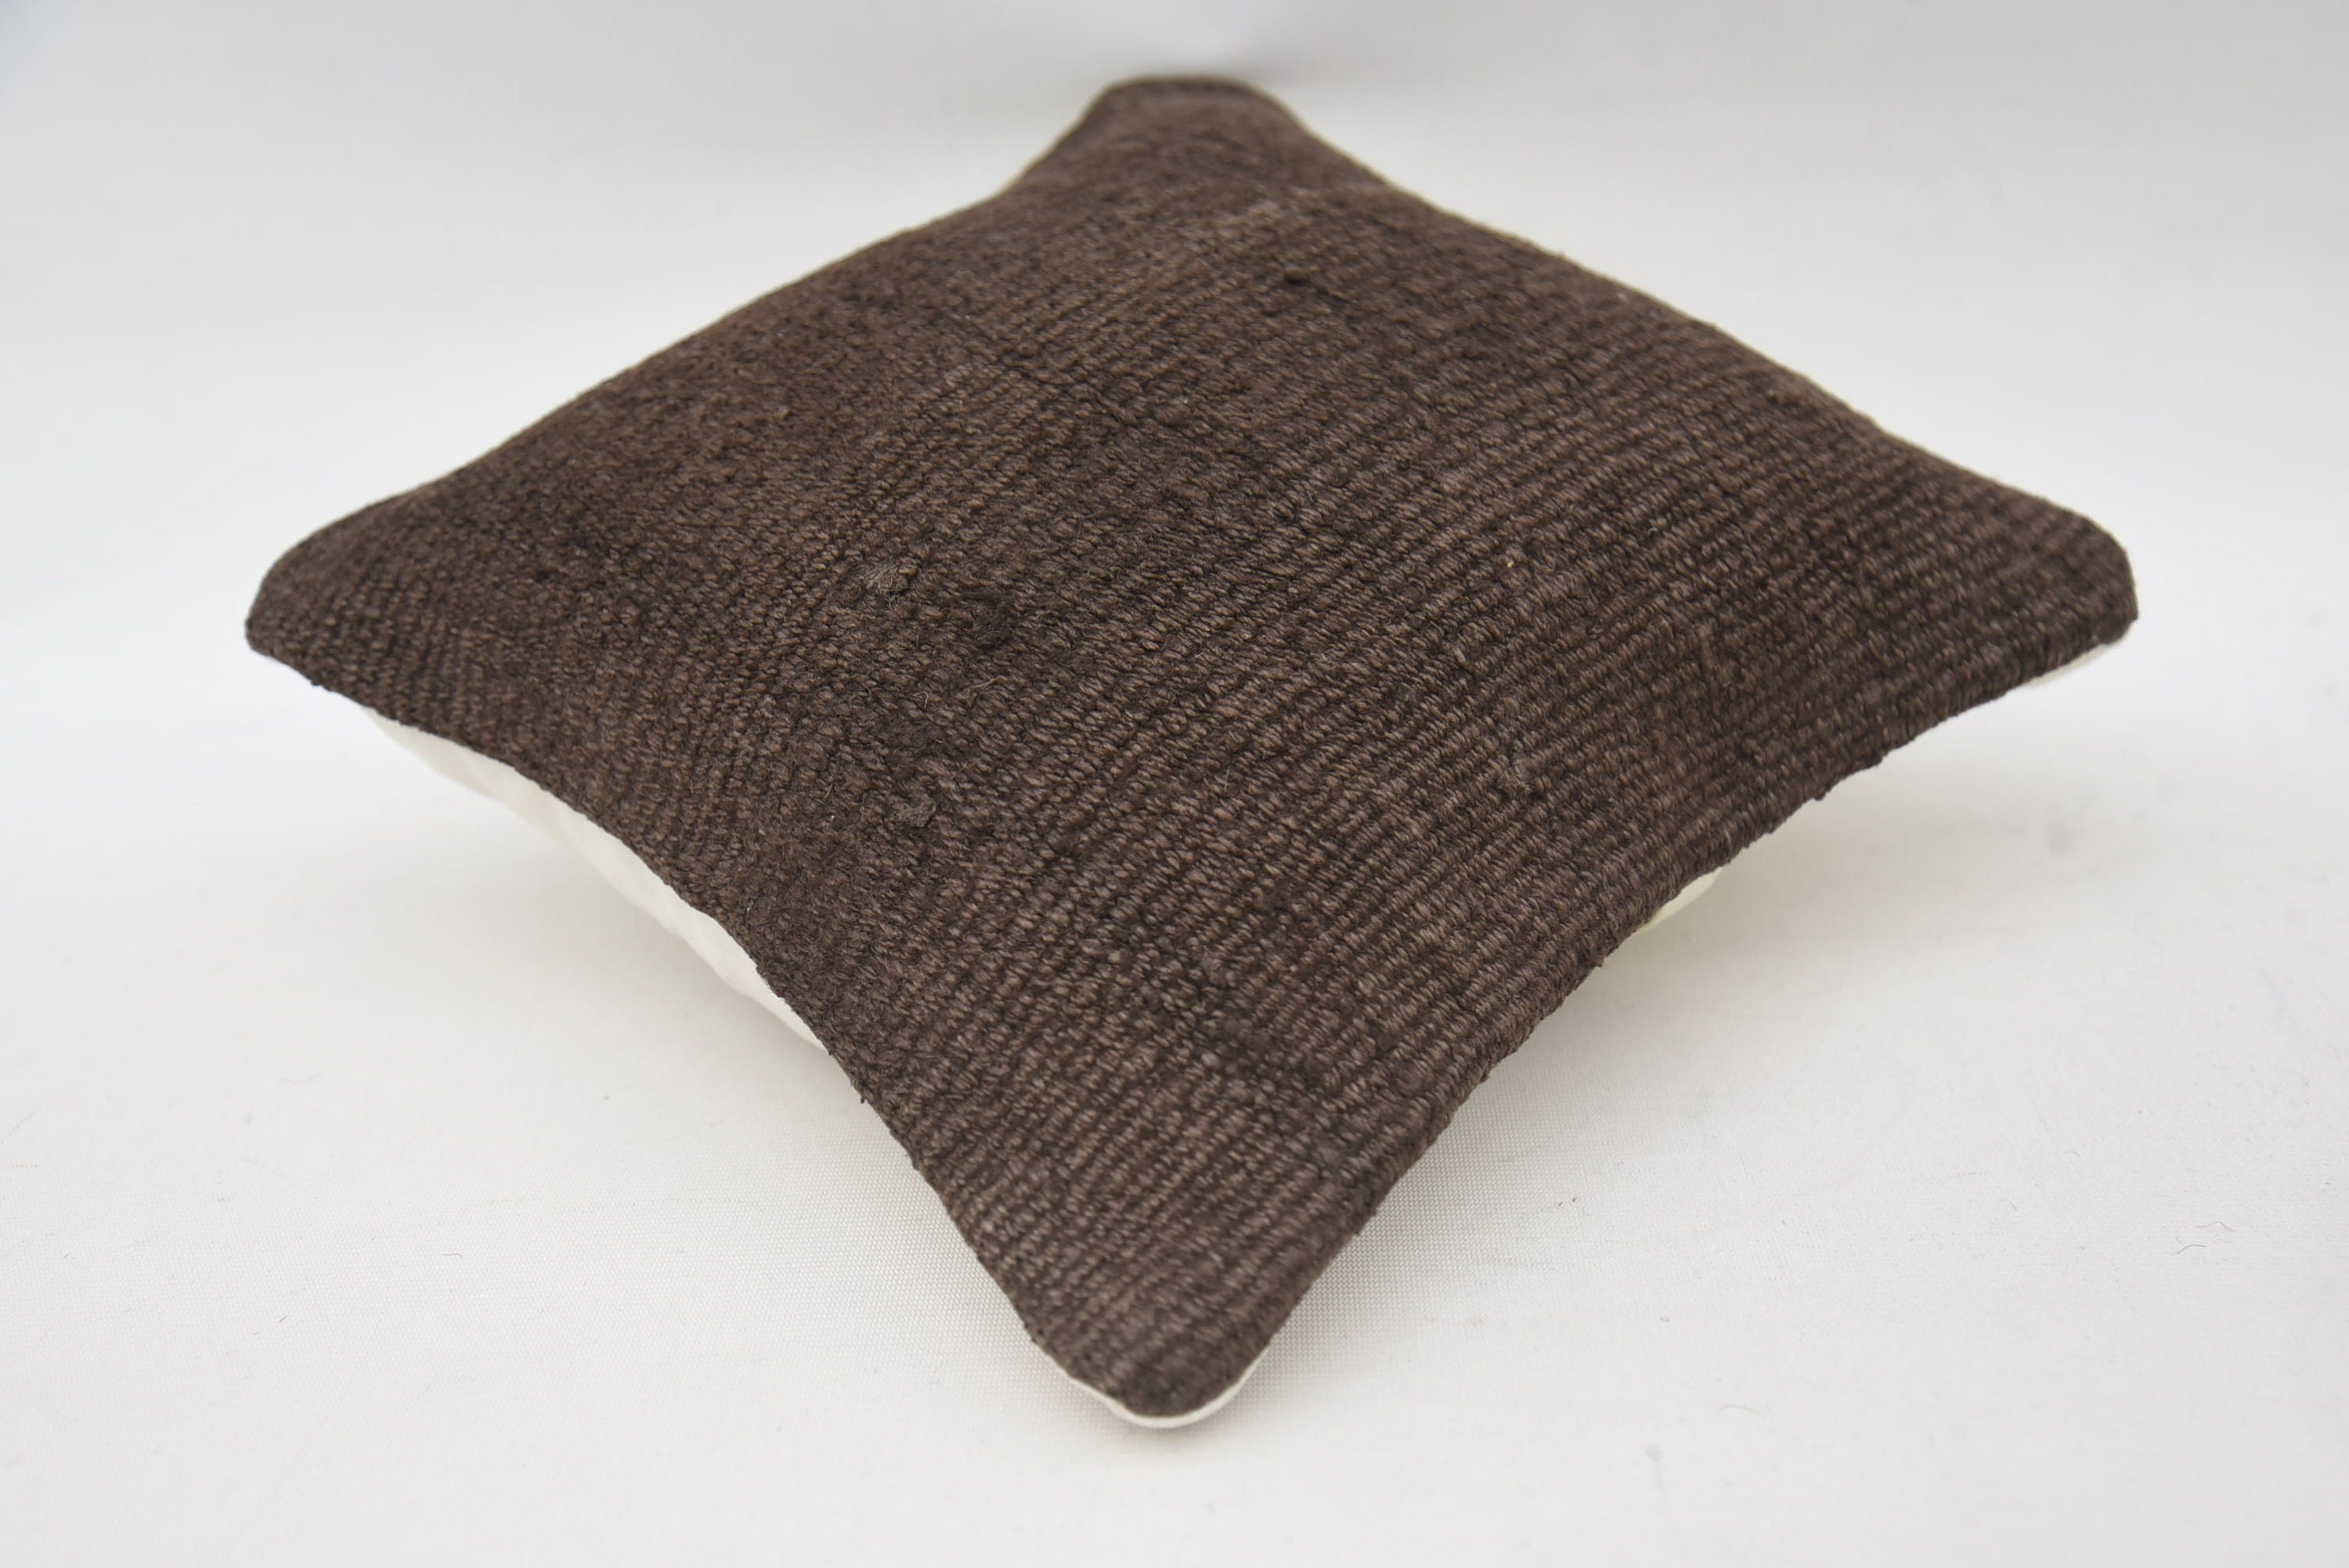 12"x12" Brown Pillow, Wool Kilim Pillow Pillow Case, Vintage Kilim Throw Pillow, Ethnical Kilim Rug Pillow, Pillow for Sofa